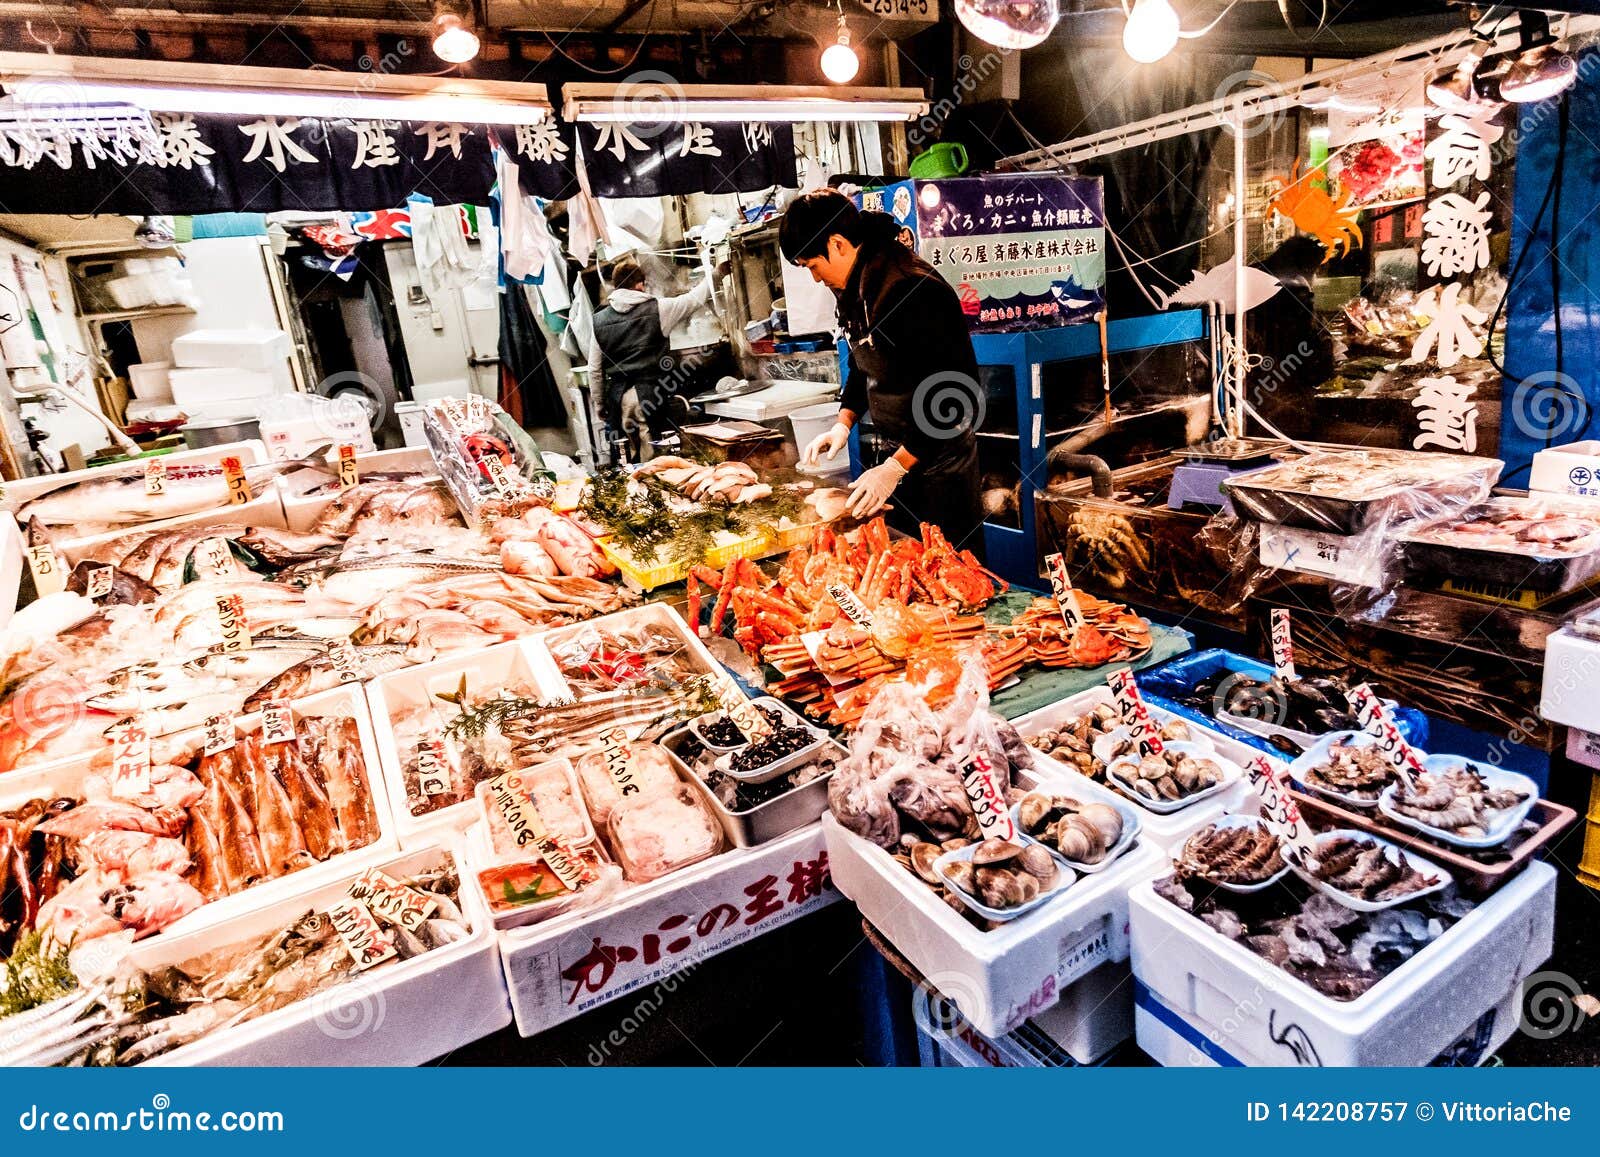 Sur le déplacement du marché aux poissons du tsunami au Japon